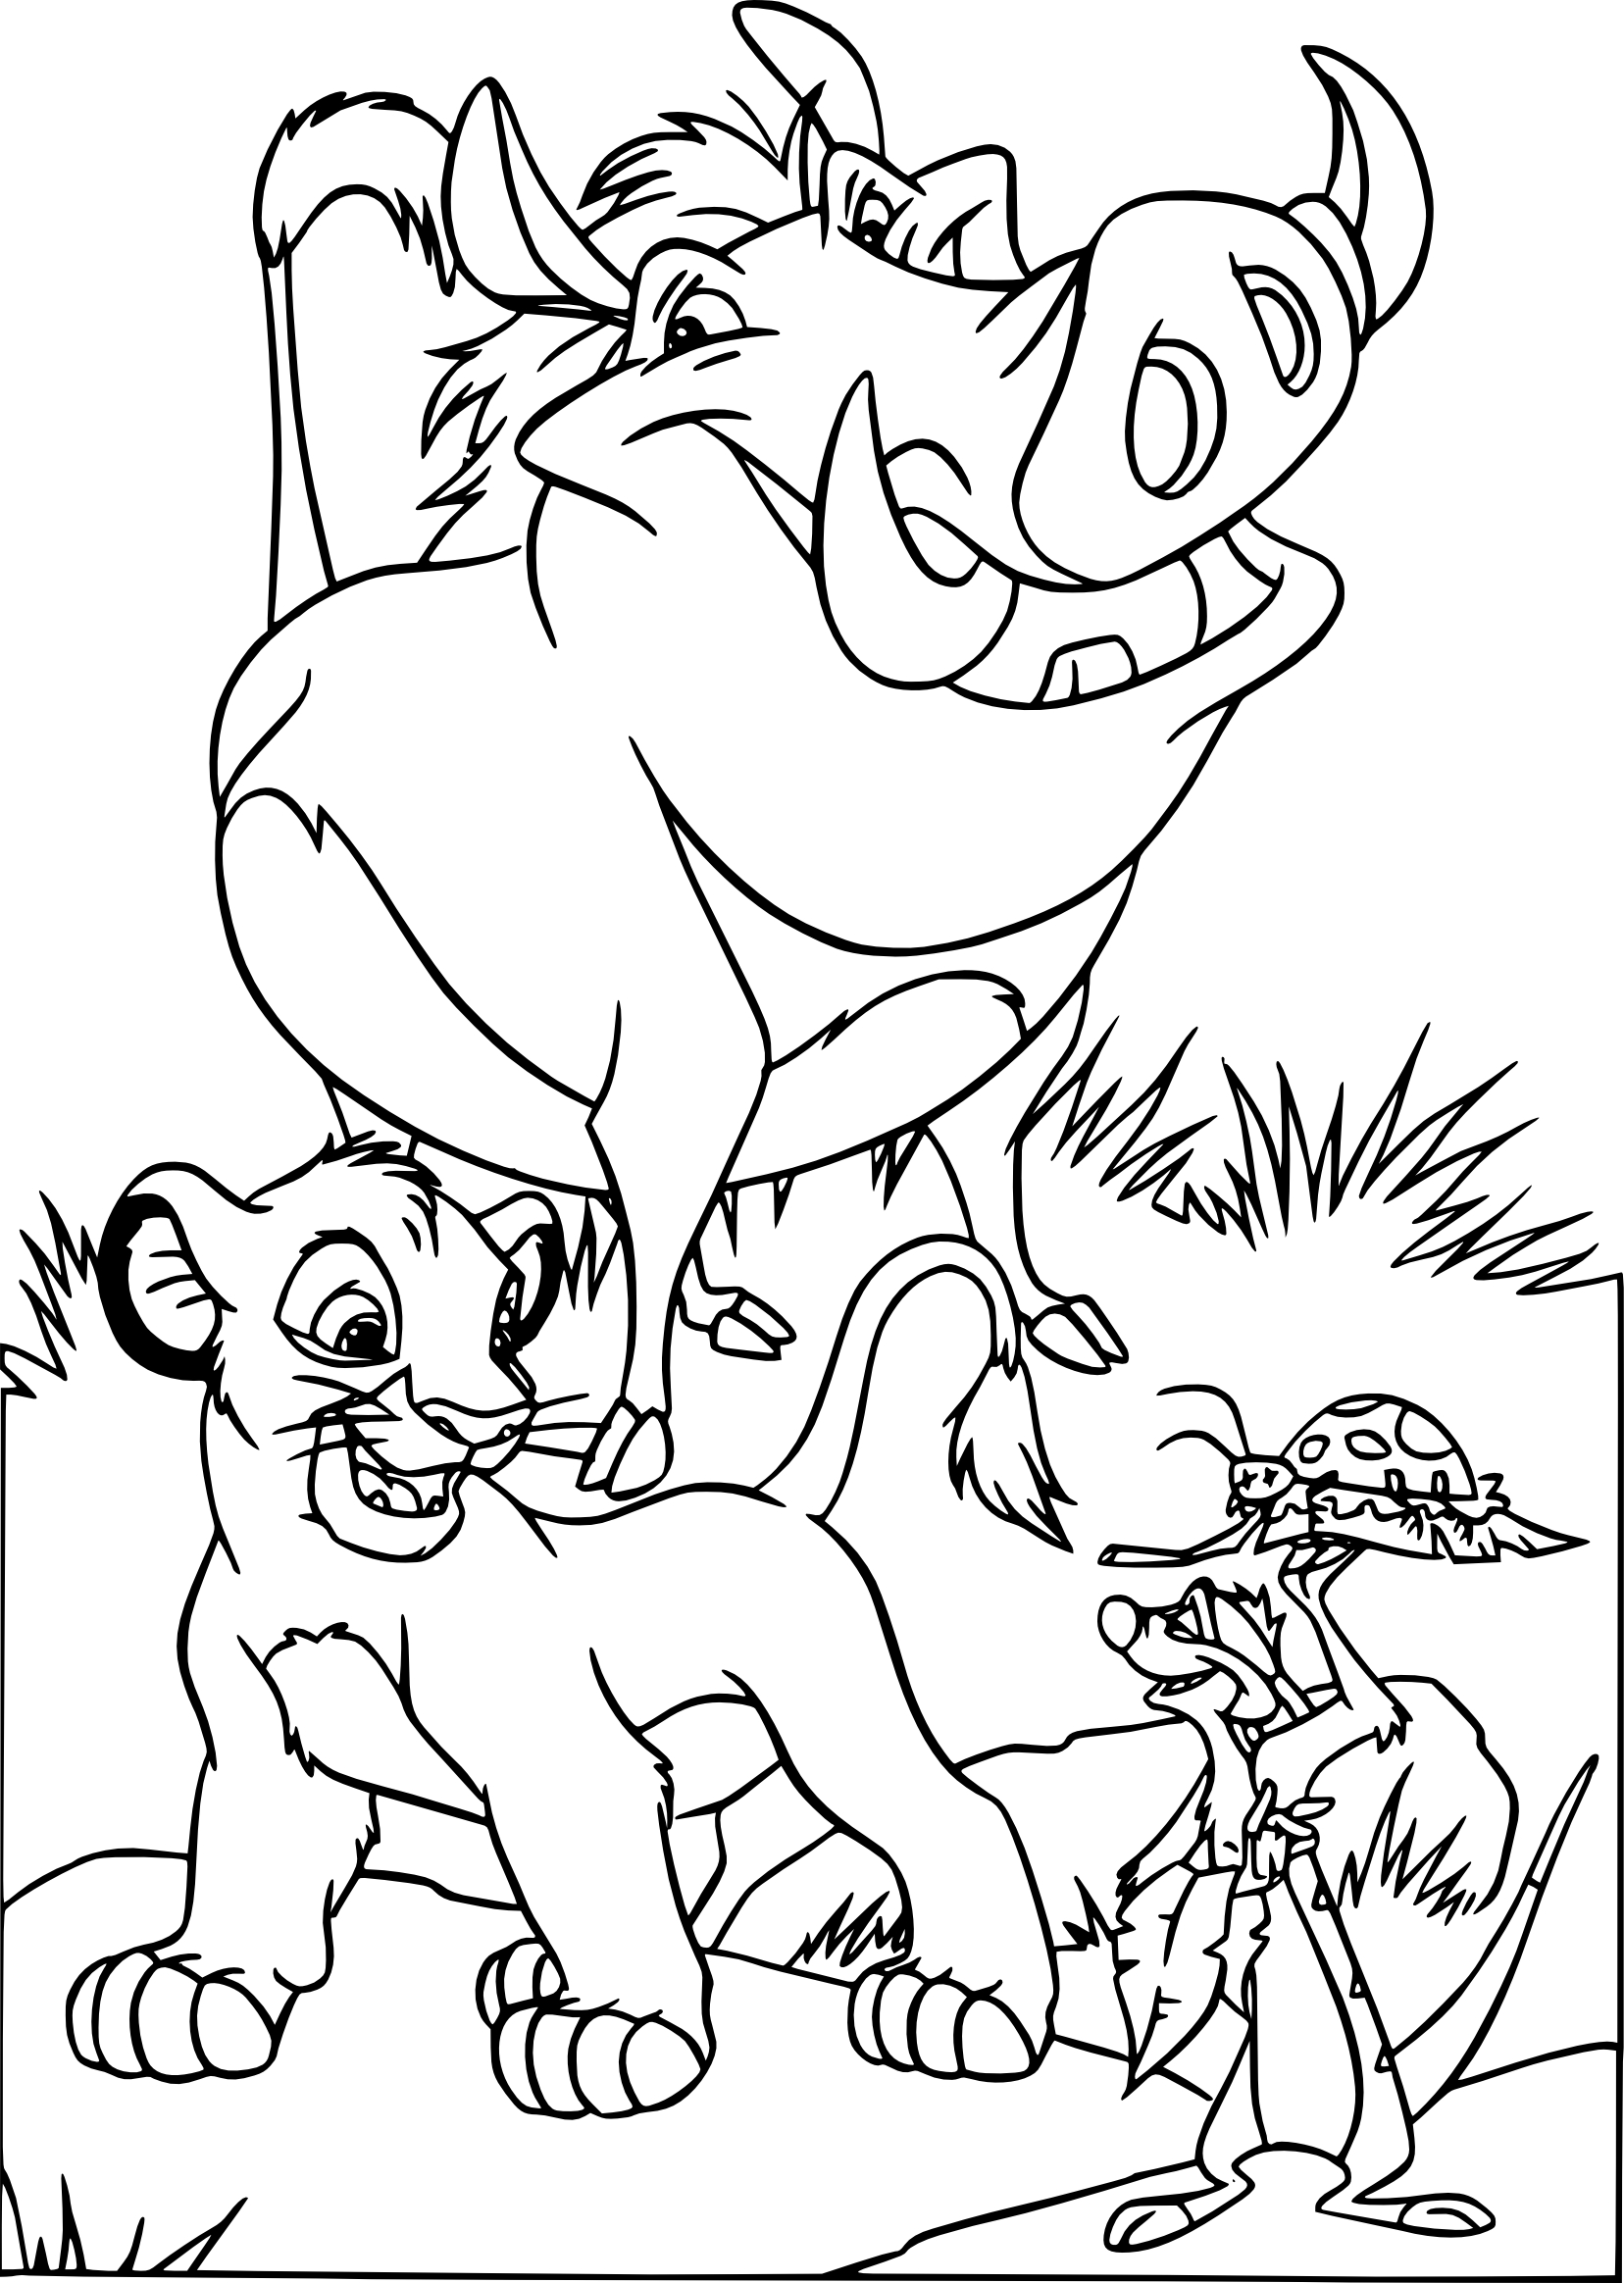 Disegno di Pumba Simba Timon da colorare